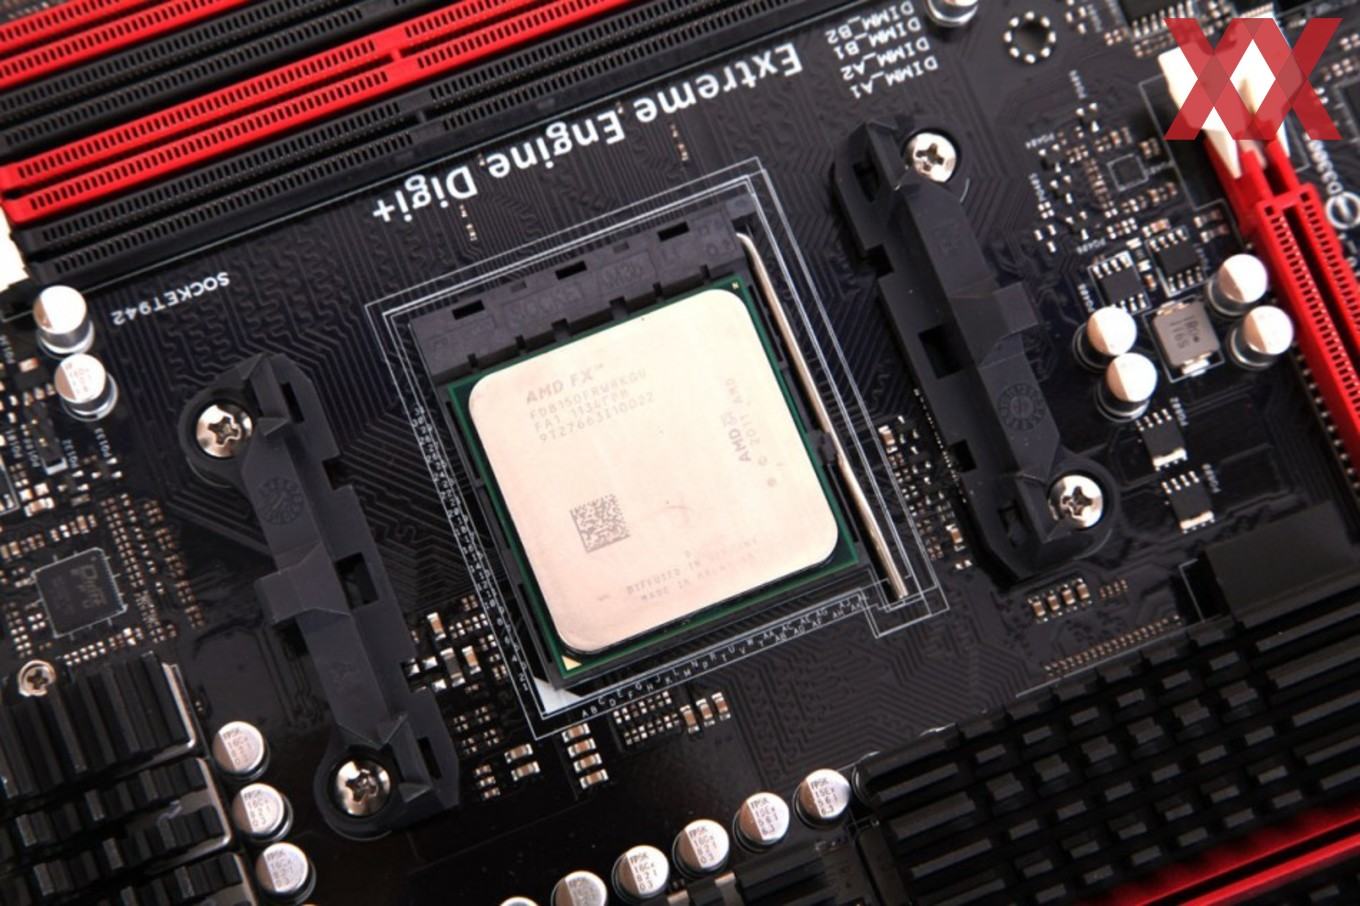 Пользователи, которые приобрели процессоры Bulldozer от AMD могут получить компенсацию